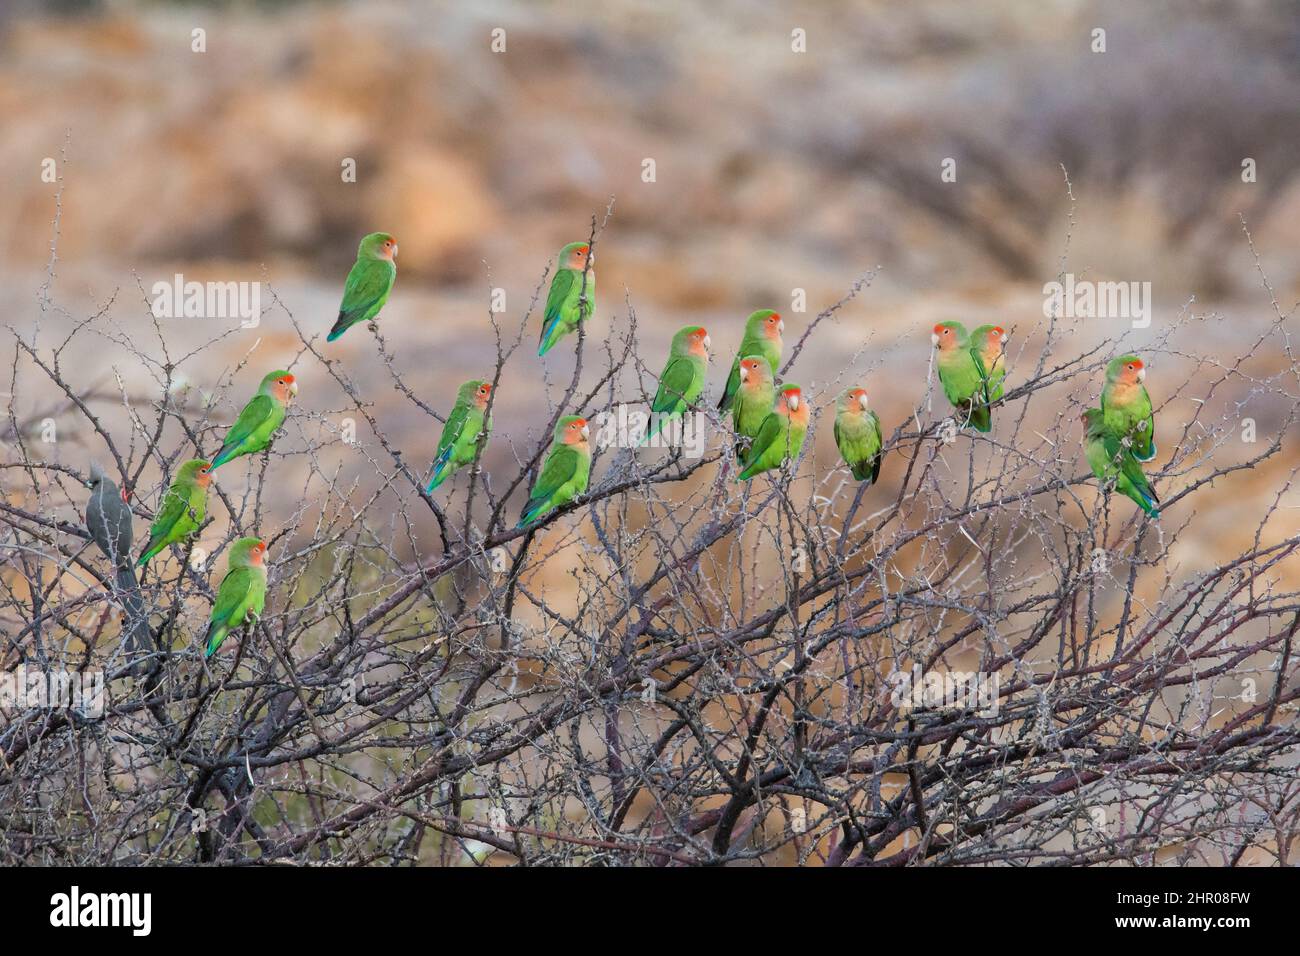 Rosy-faced Lovebird (Agapornis roseicollis) group on a shrub, Spitzkoppe, Damaraland Region, Namibia Stock Photo